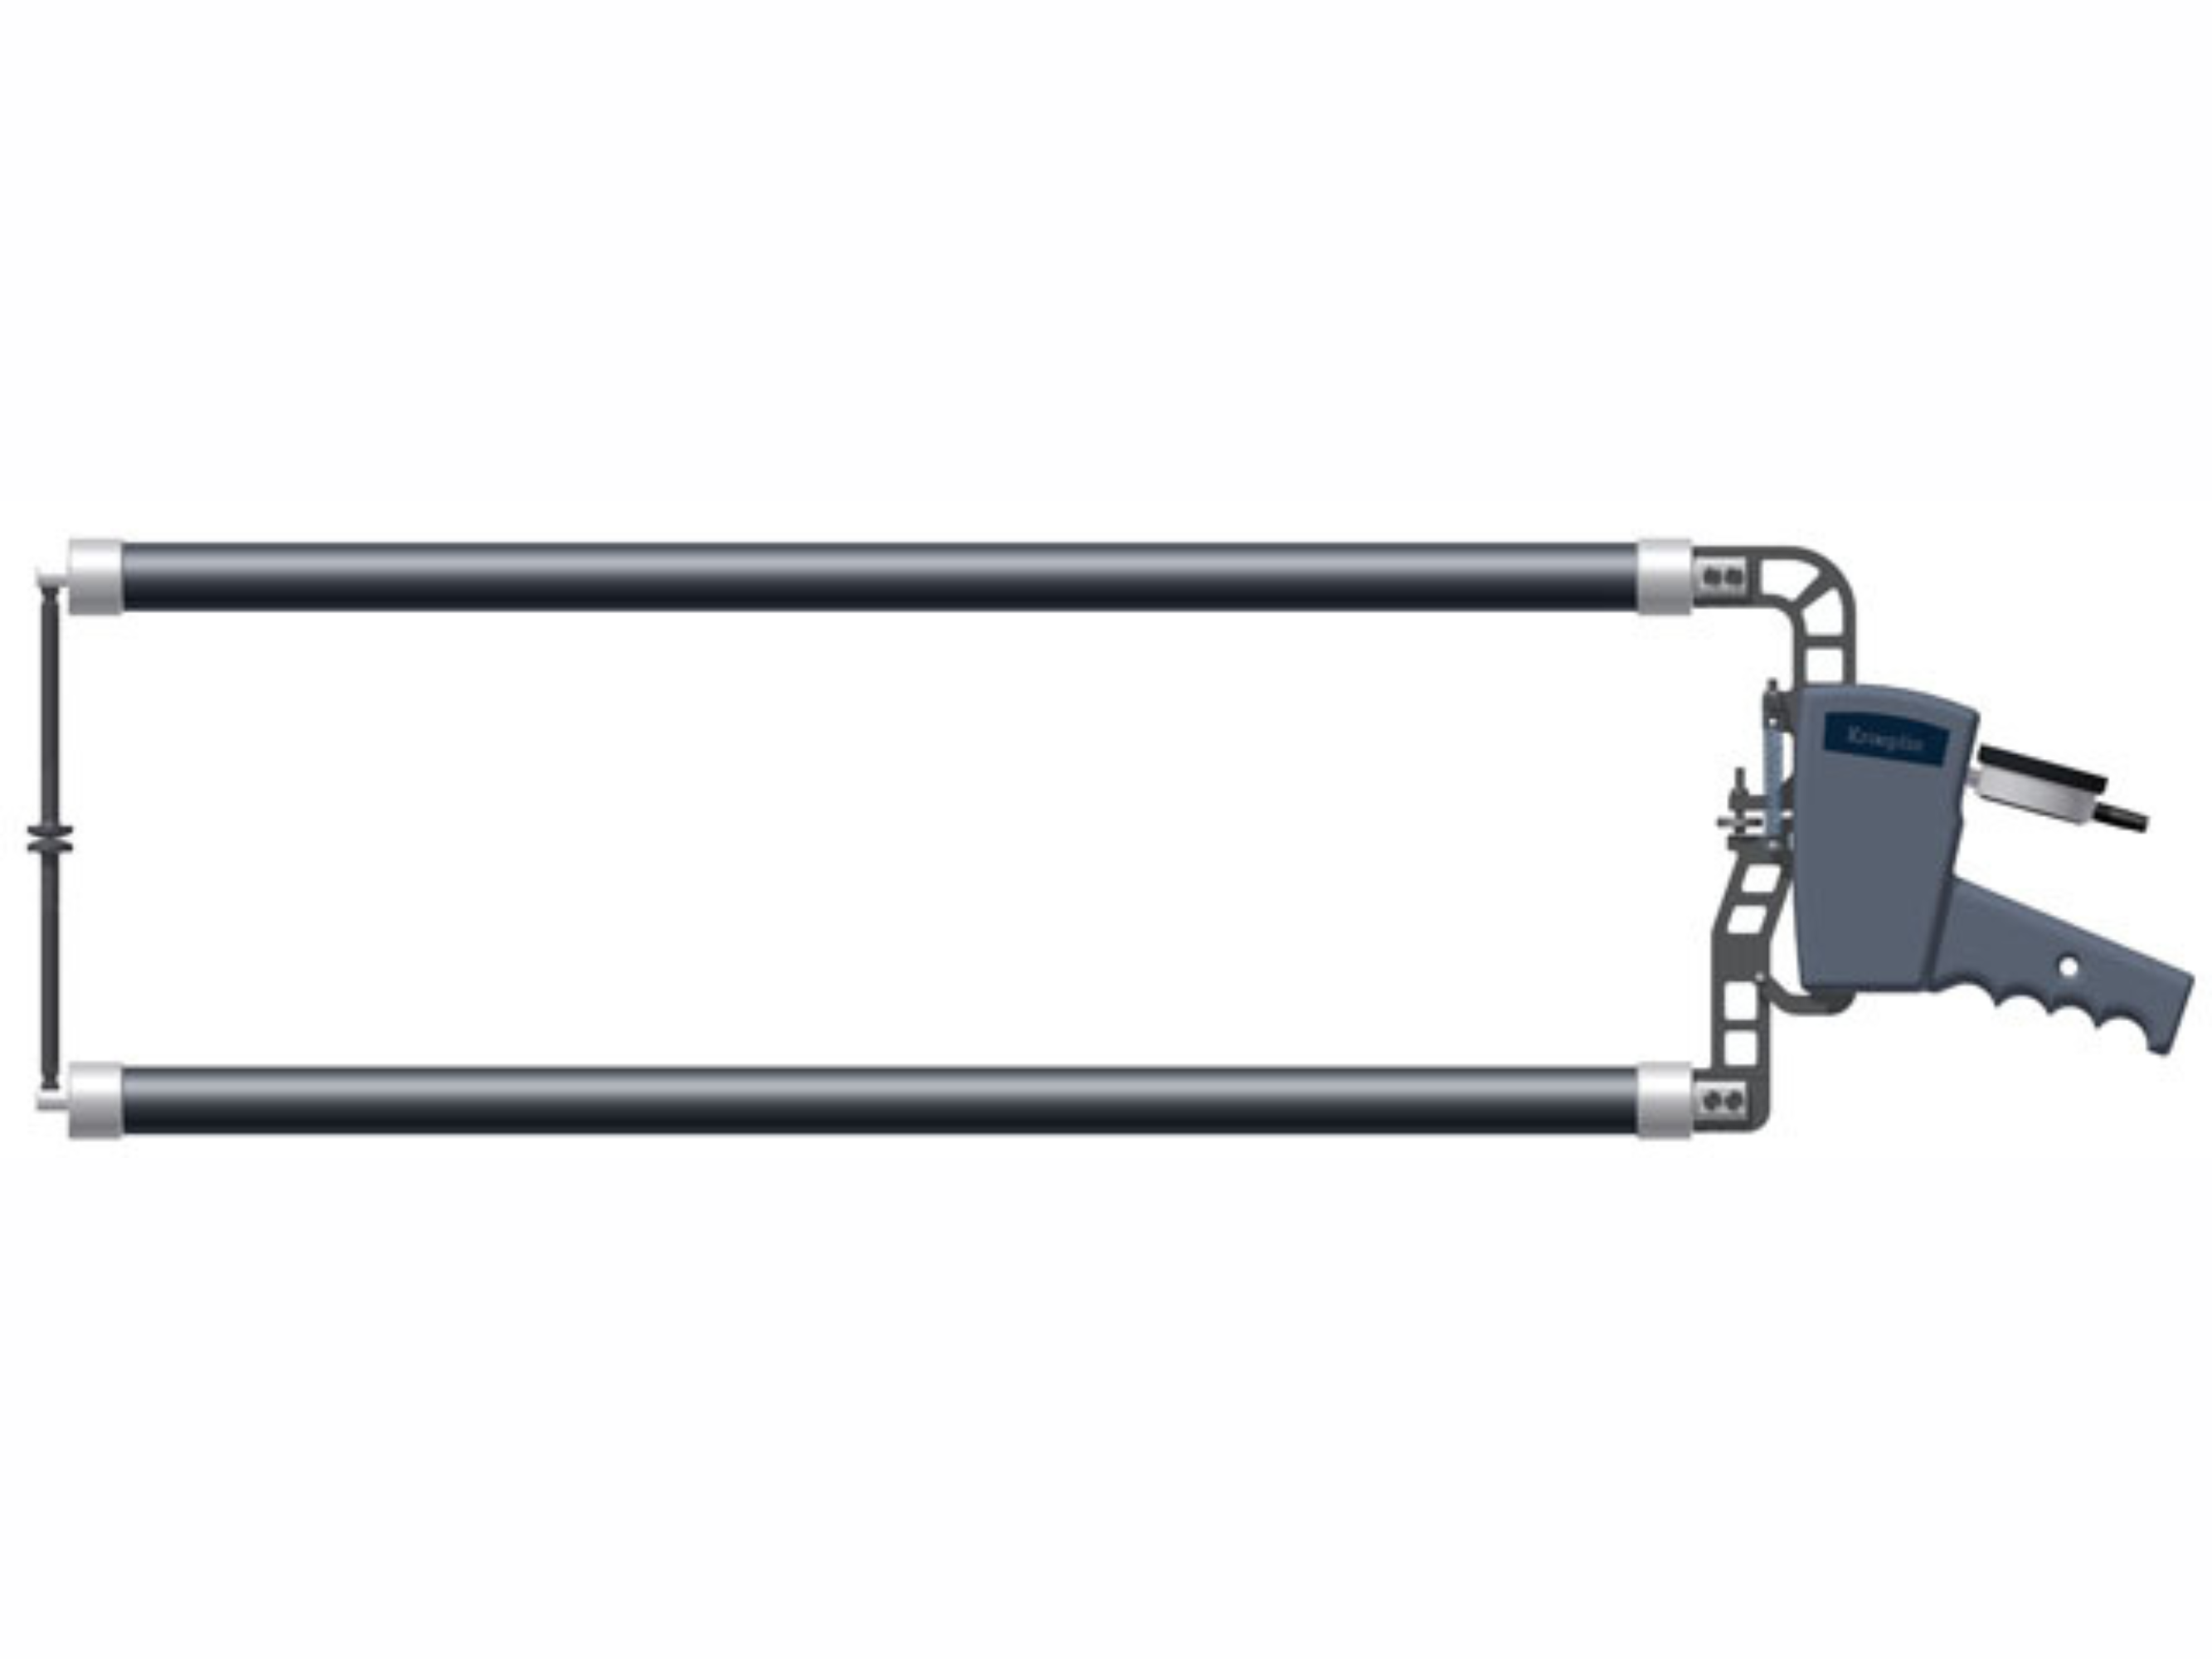 Digital External Caliper Gauge 0-200mm, 0.2mm D16200